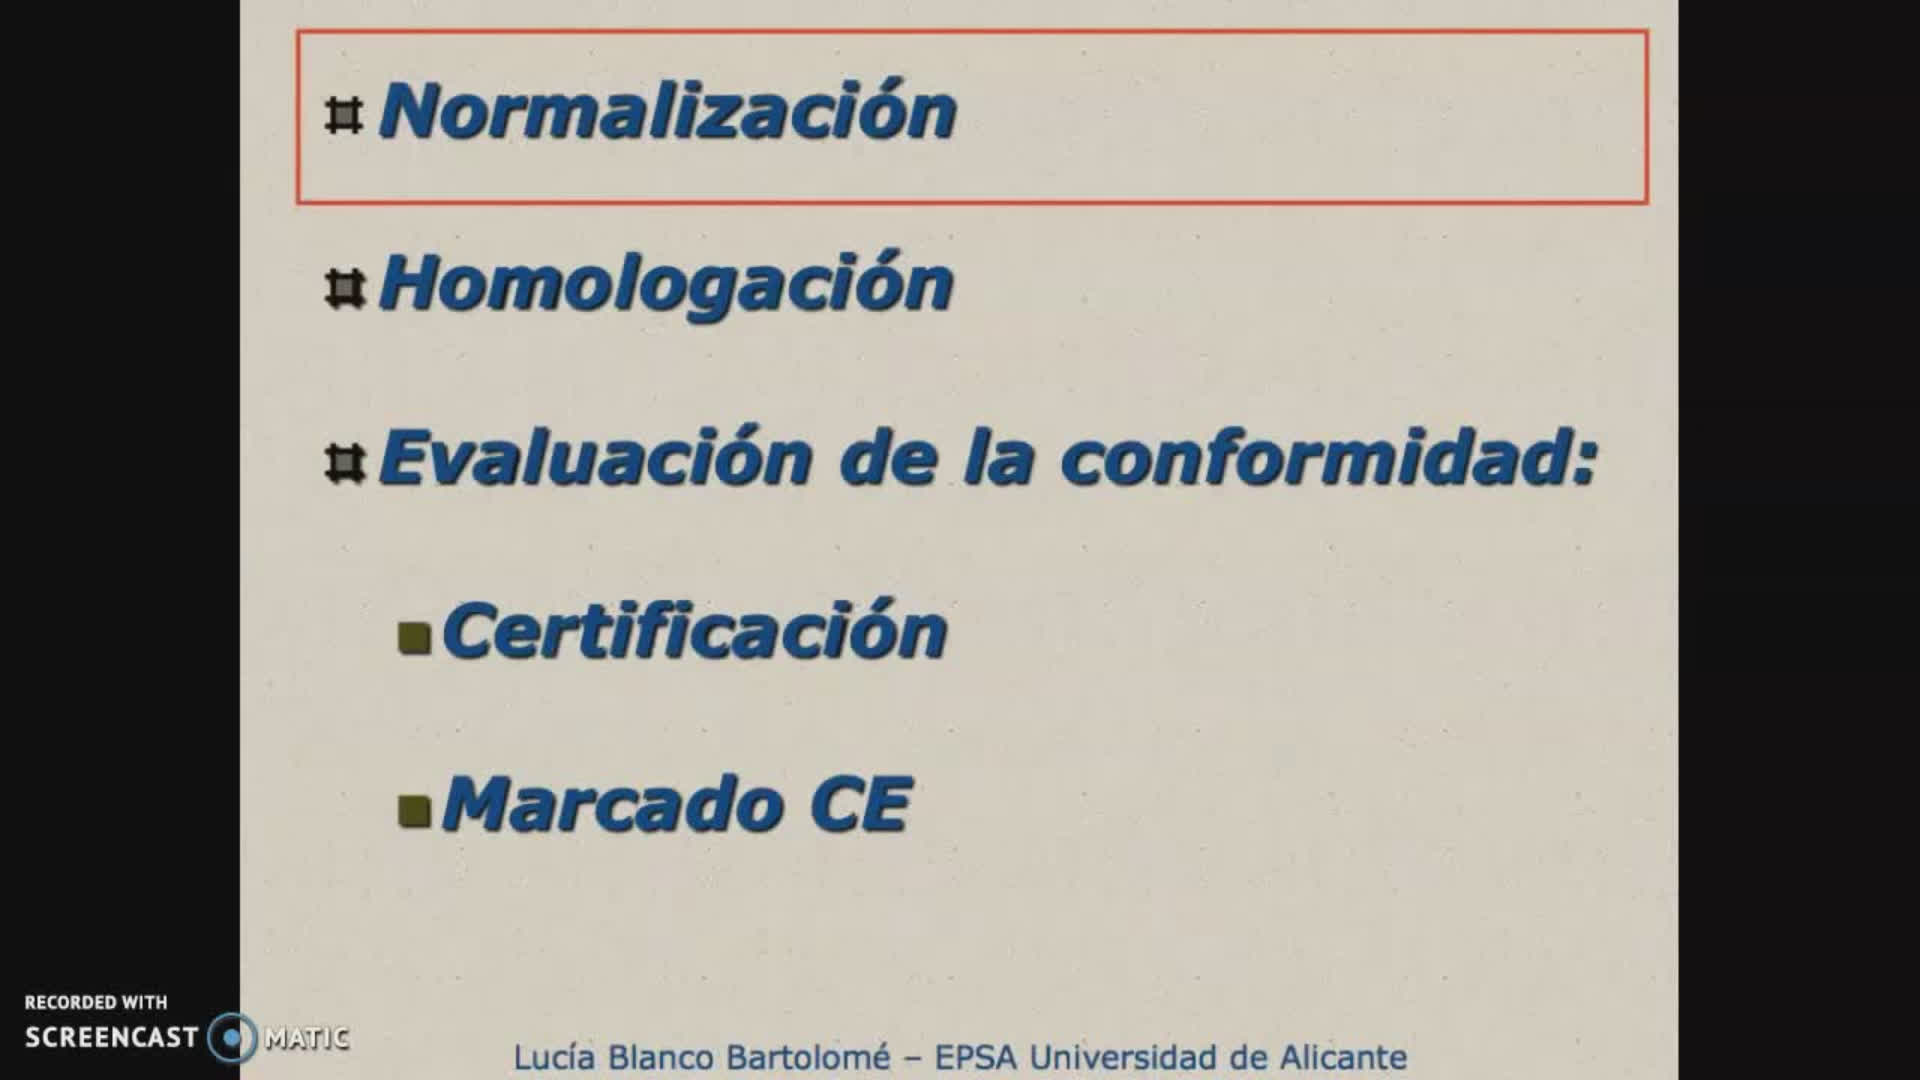 Normalización-Homologación-Evaluación de la conformidad (UNE)